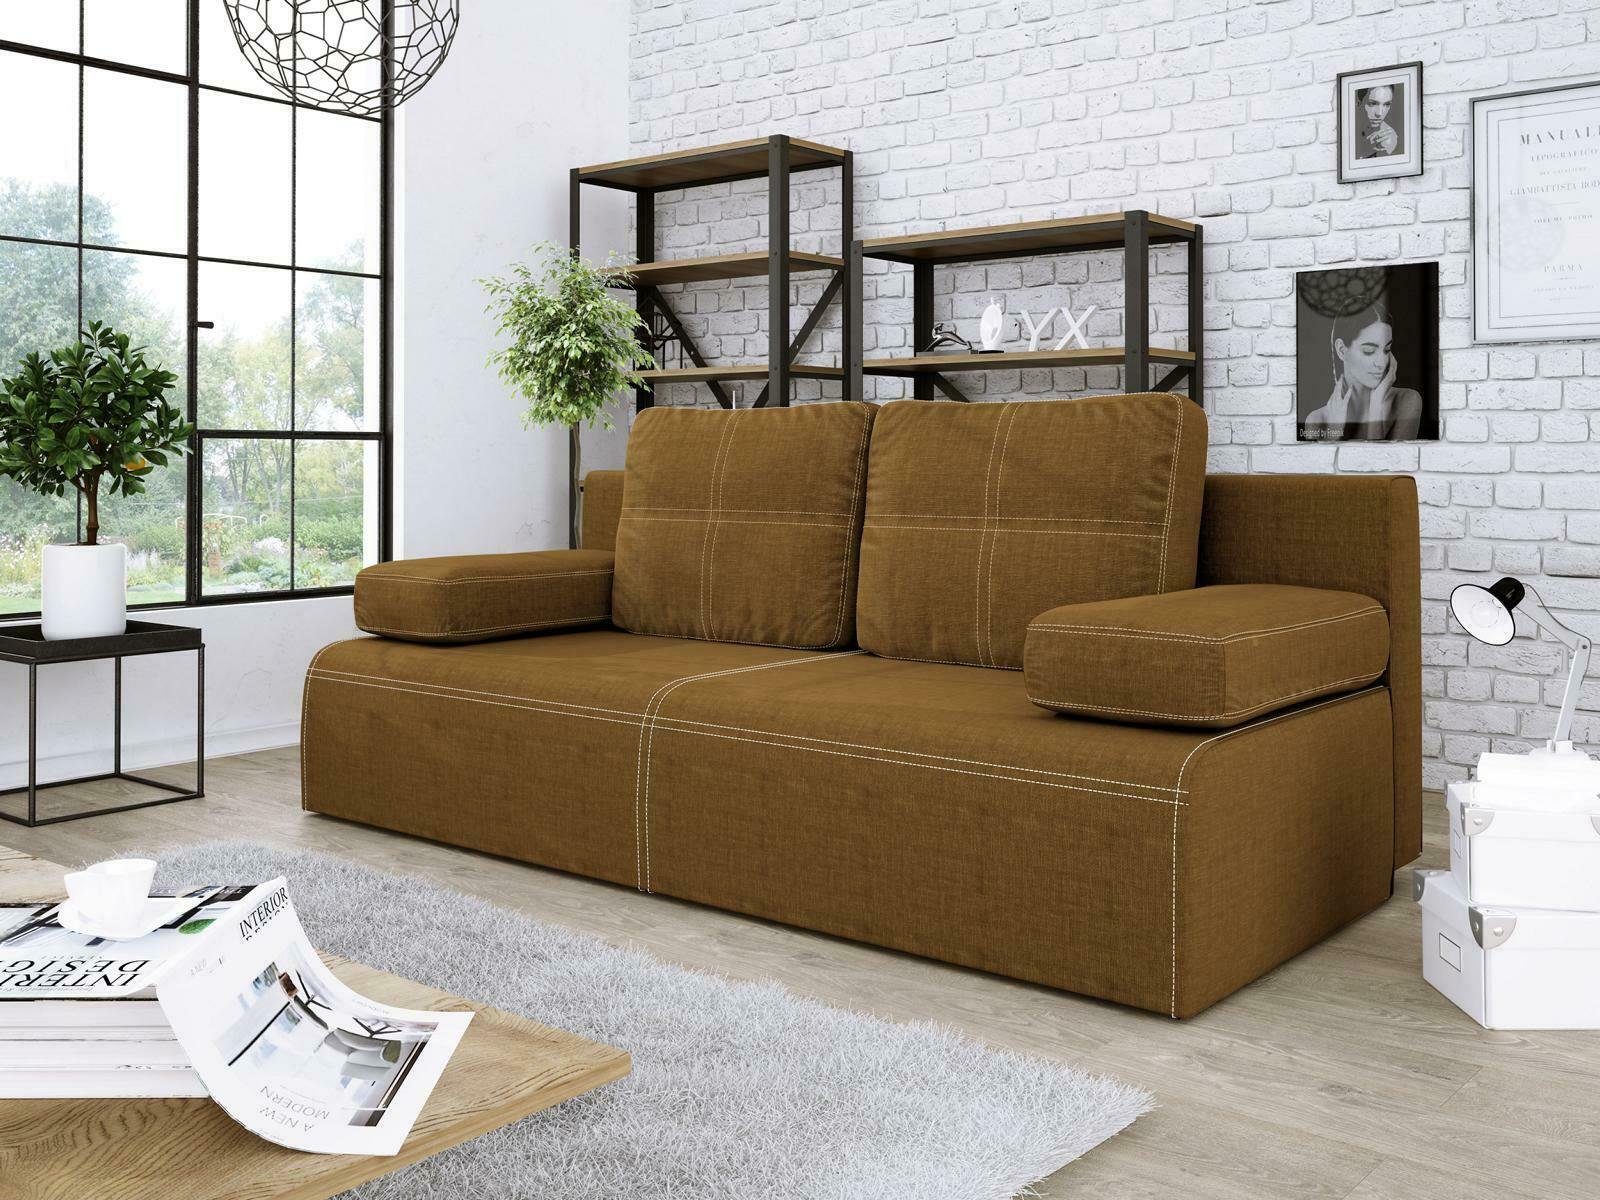 JVmoebel Sofa Grüner Dreisitzer Stoffsofa Luxus Design Möbel Couch Neu, Made in Europe Braun